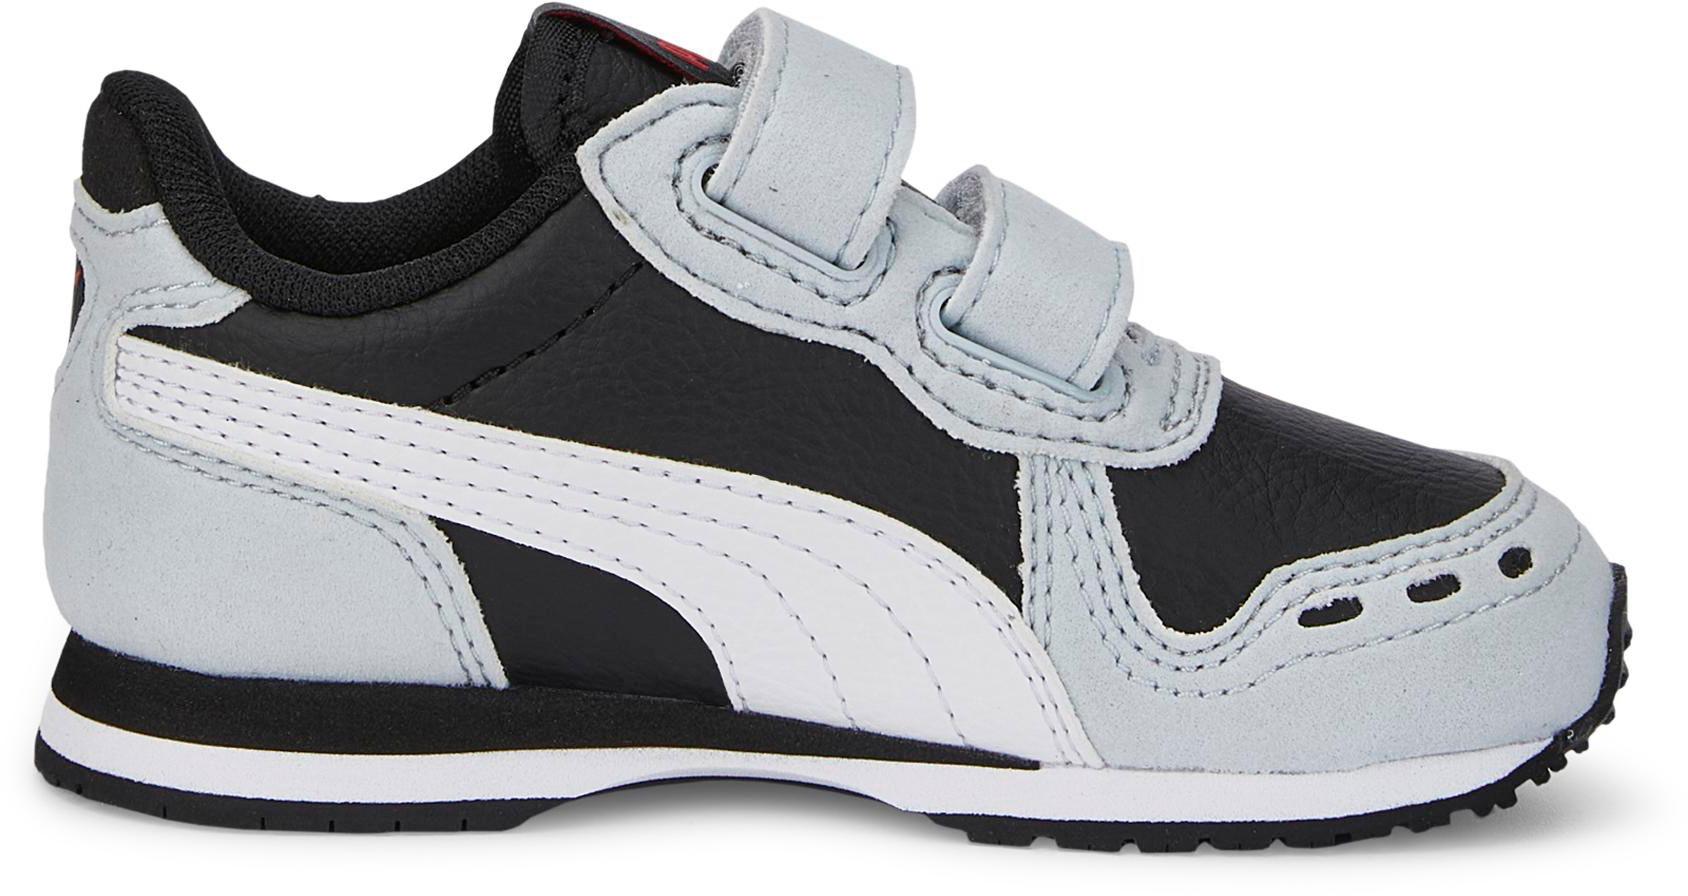 PUMA Cabana Racer kaufen SportScheck puma von gray SL Sneaker Online 20 im black-puma white-platinum Kinder Shop V